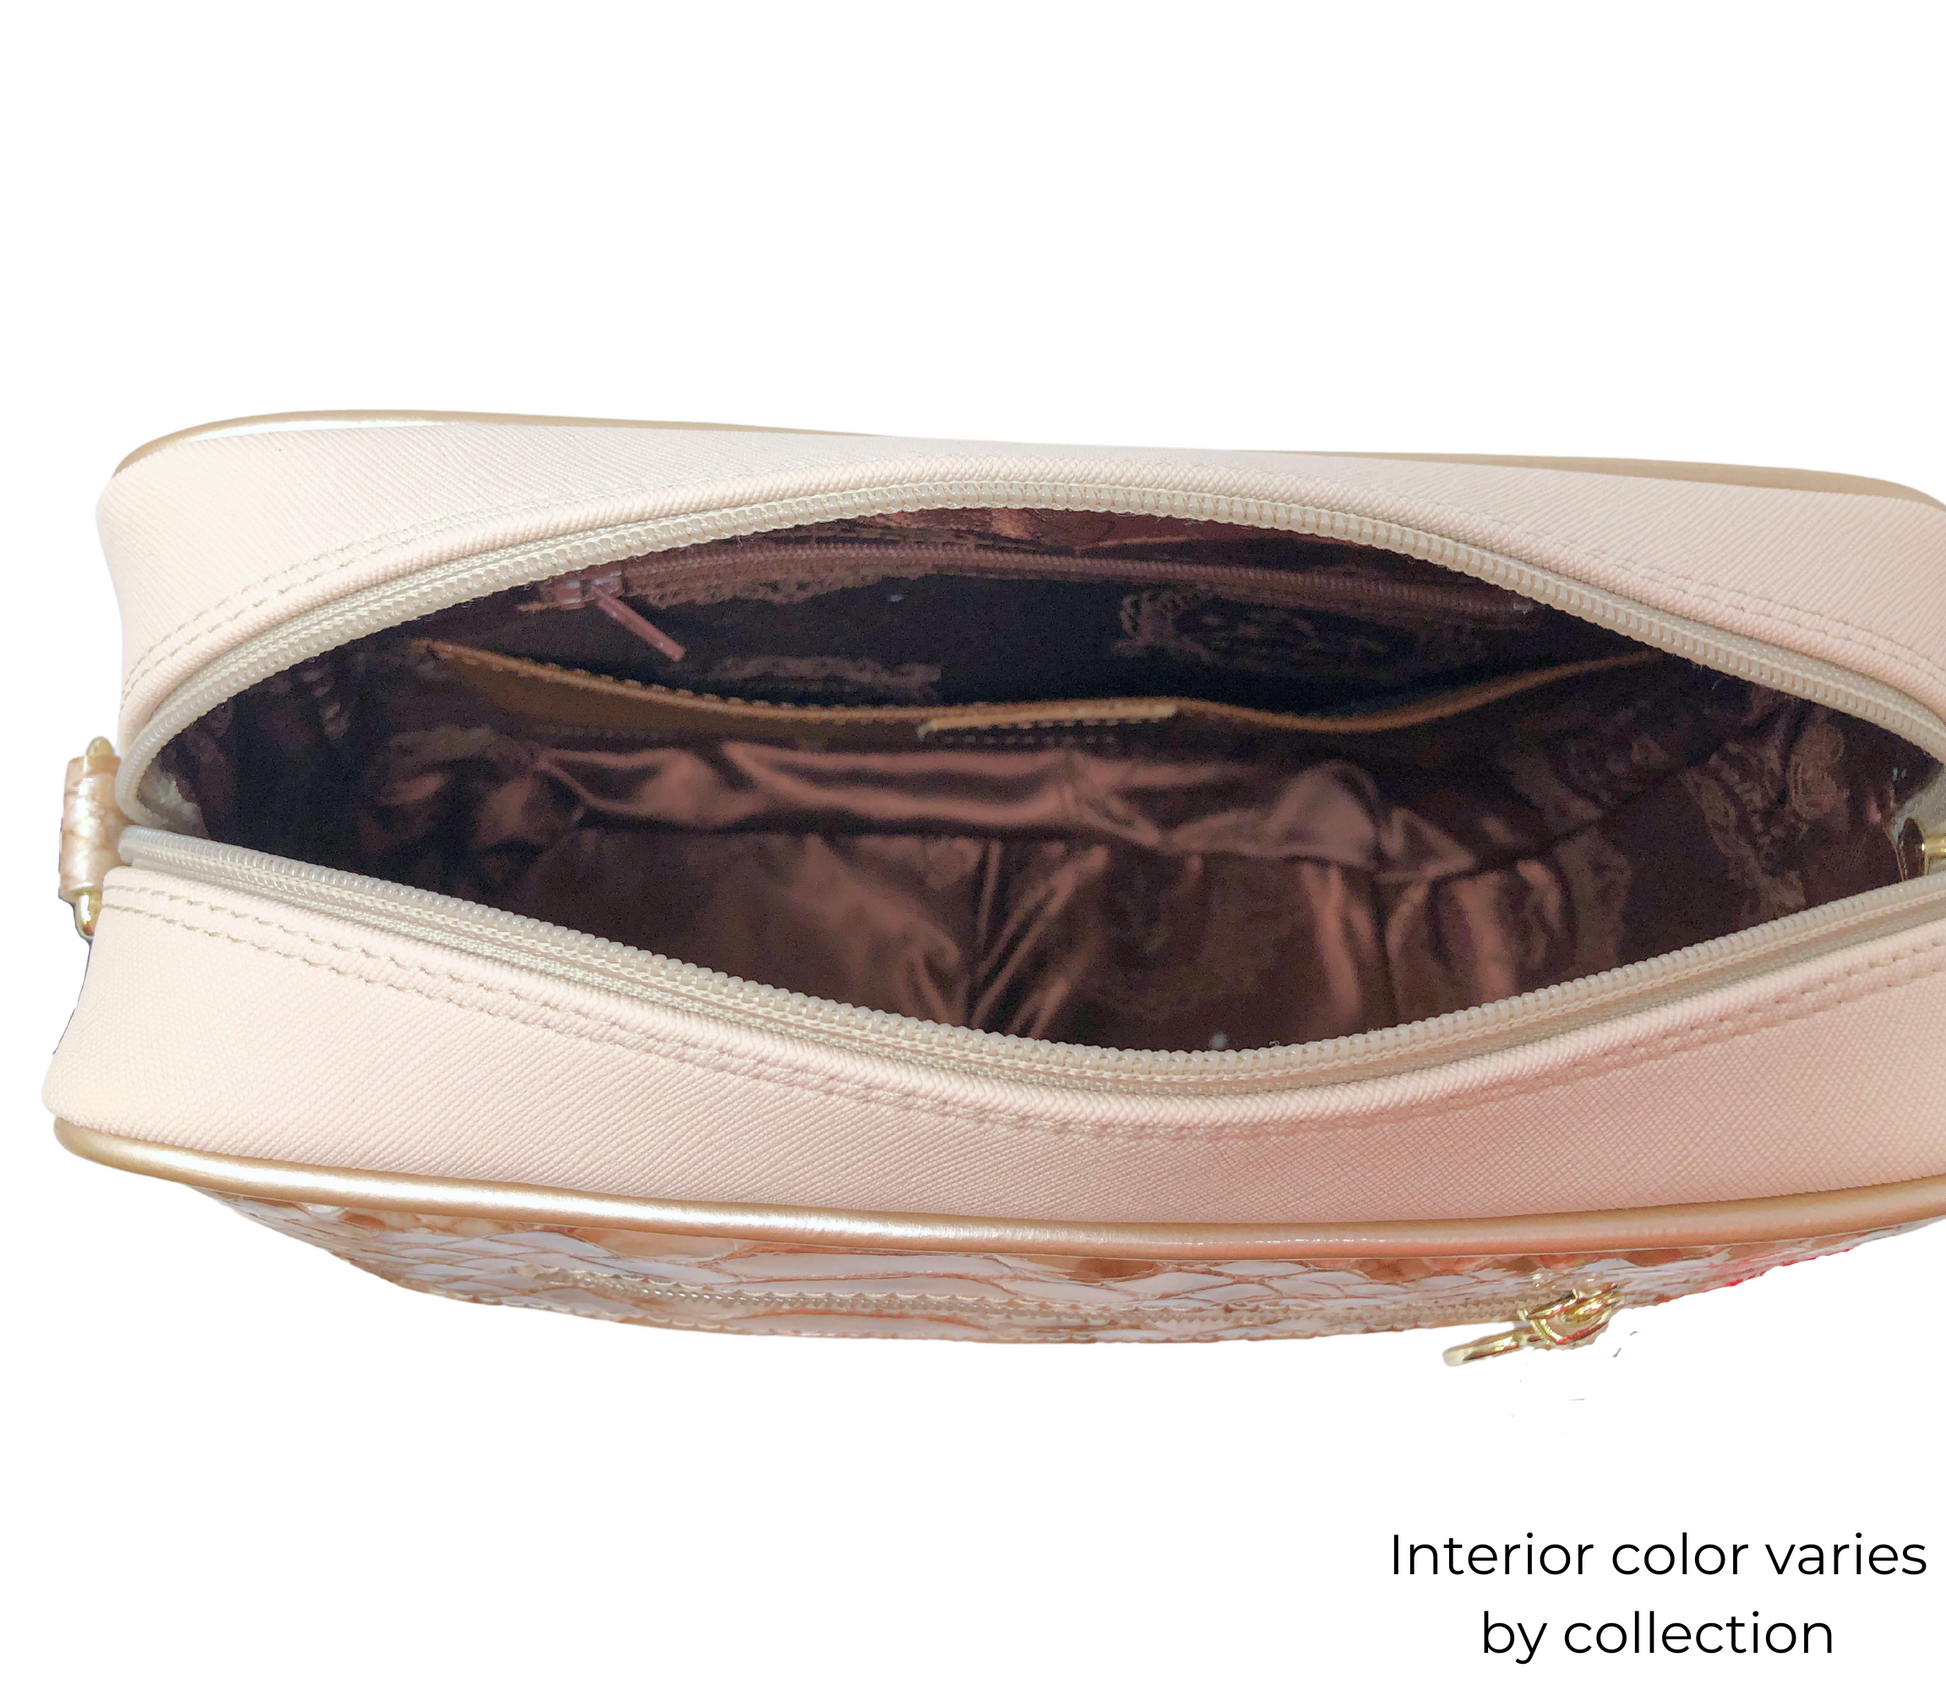 #color_ Navy Beige Red | Cavalinho Unique Crossbody Bag - Navy Beige Red - 18260251.22-Internal0251.05